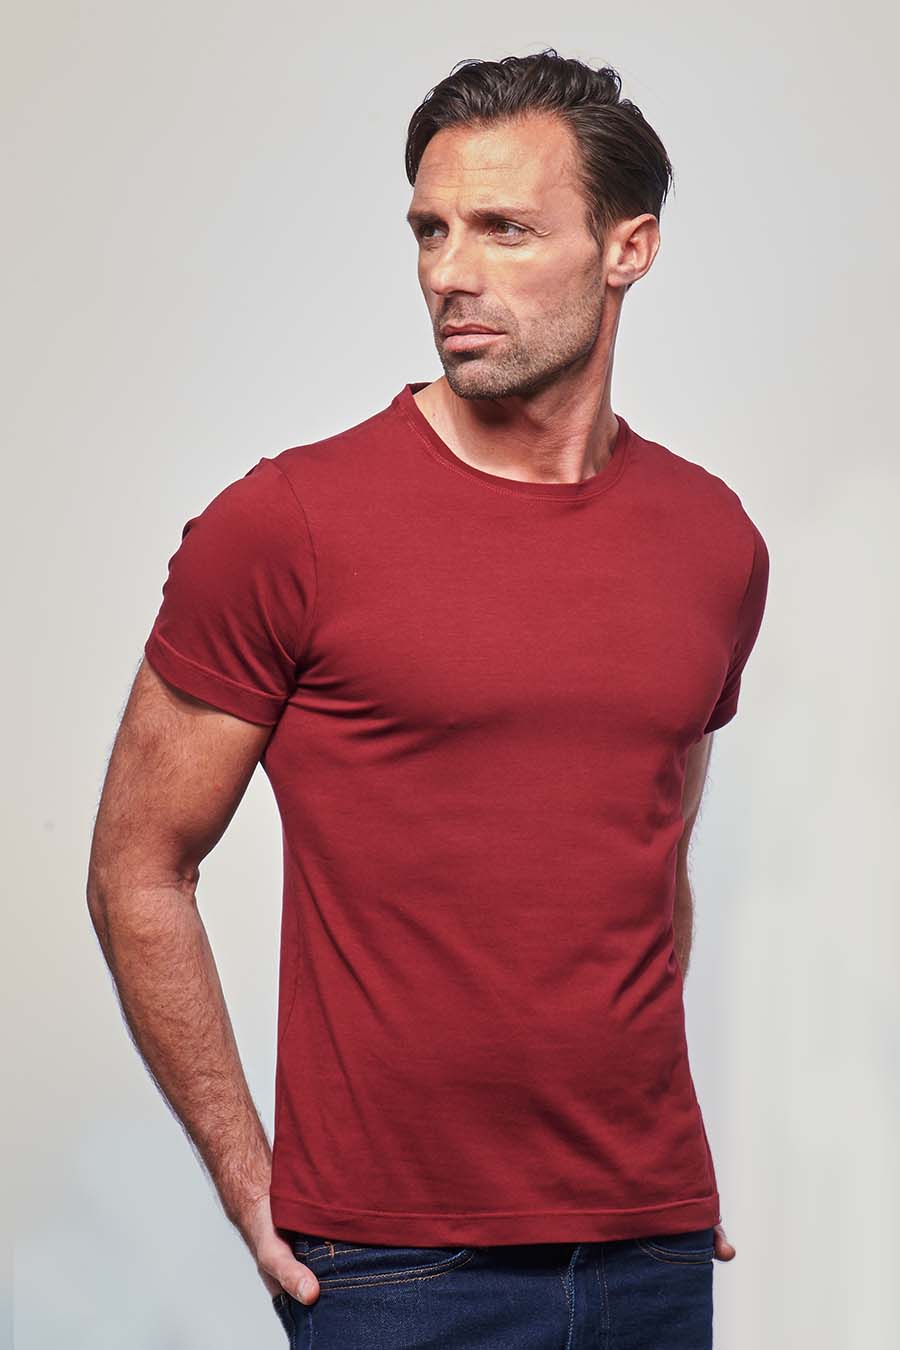 Tee-shirt ajusté Homme made in France en coton bio bordeaux - Fil Rouge